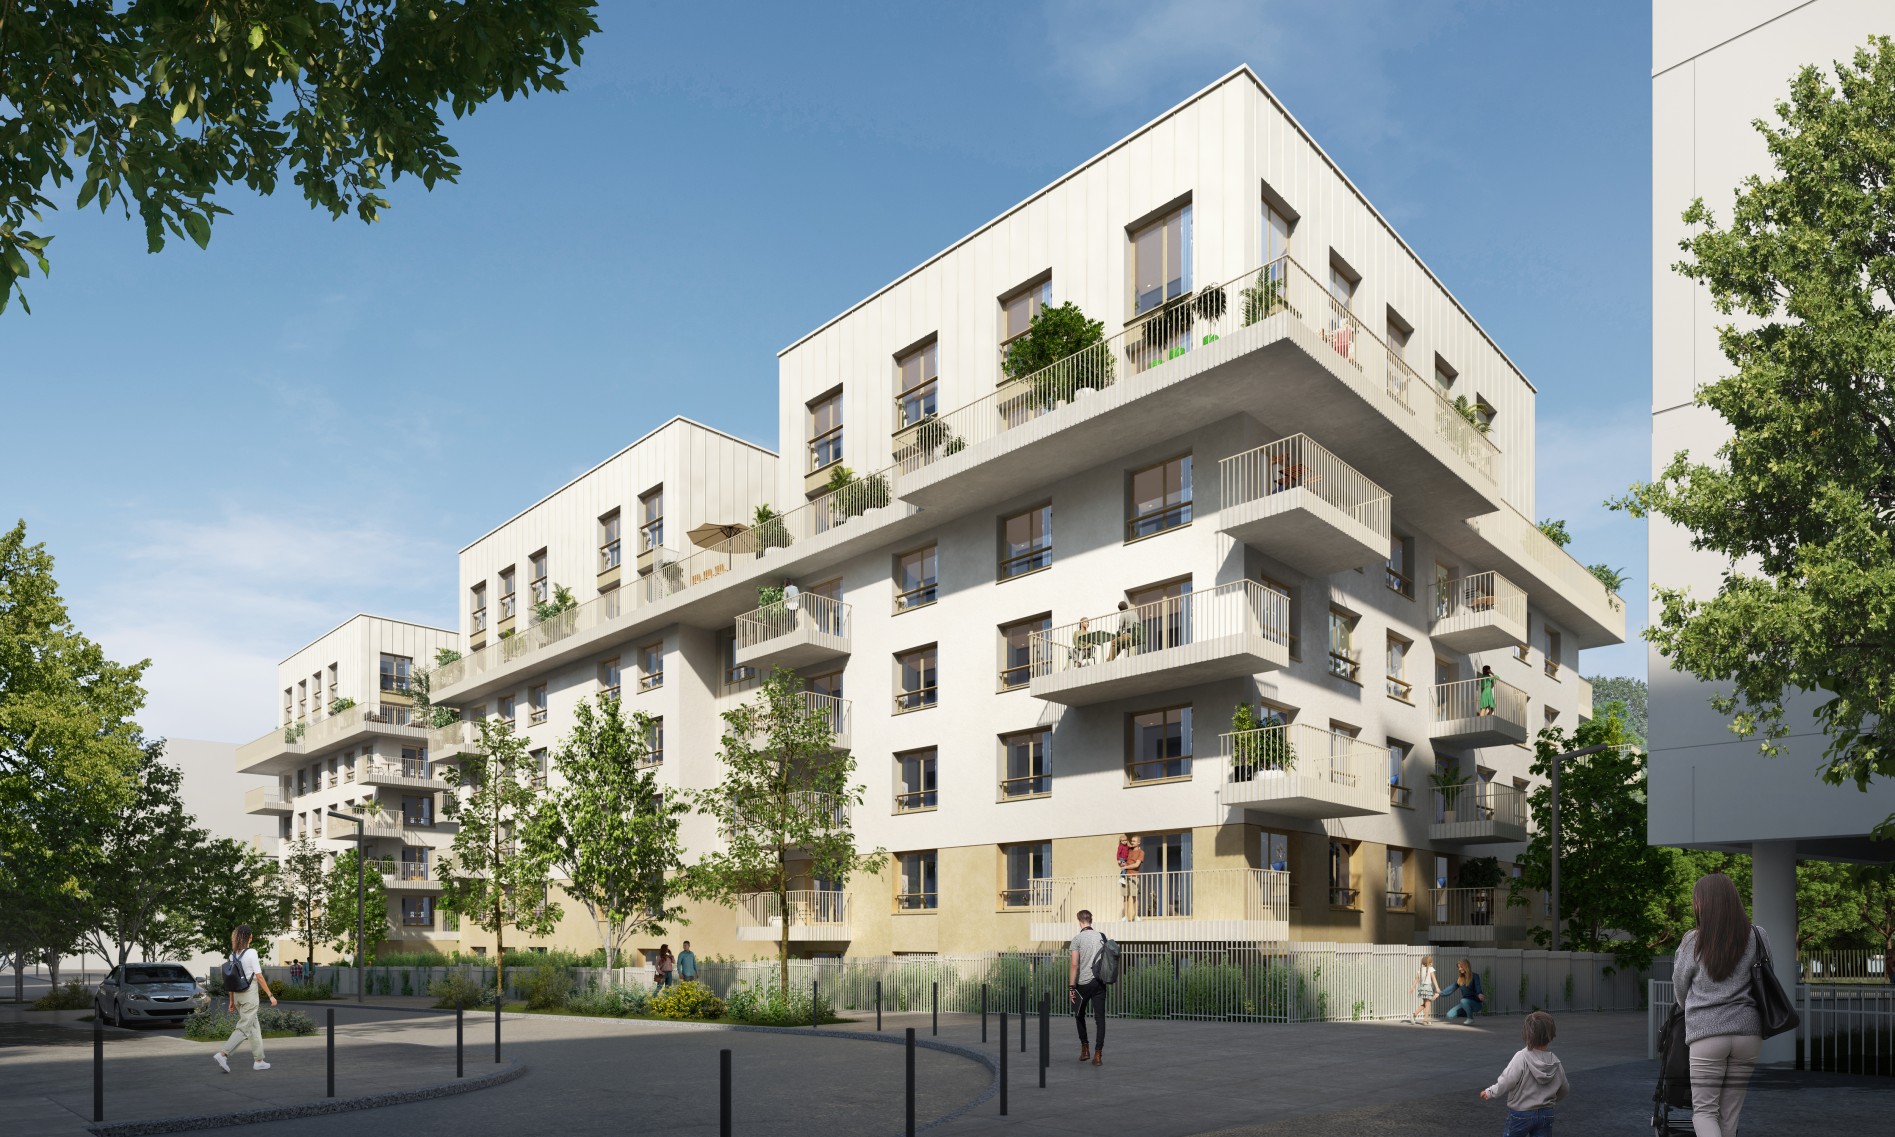 Programme immobilier – PERLE DU PARC – du studio au T4 – Châtenay-Malabry